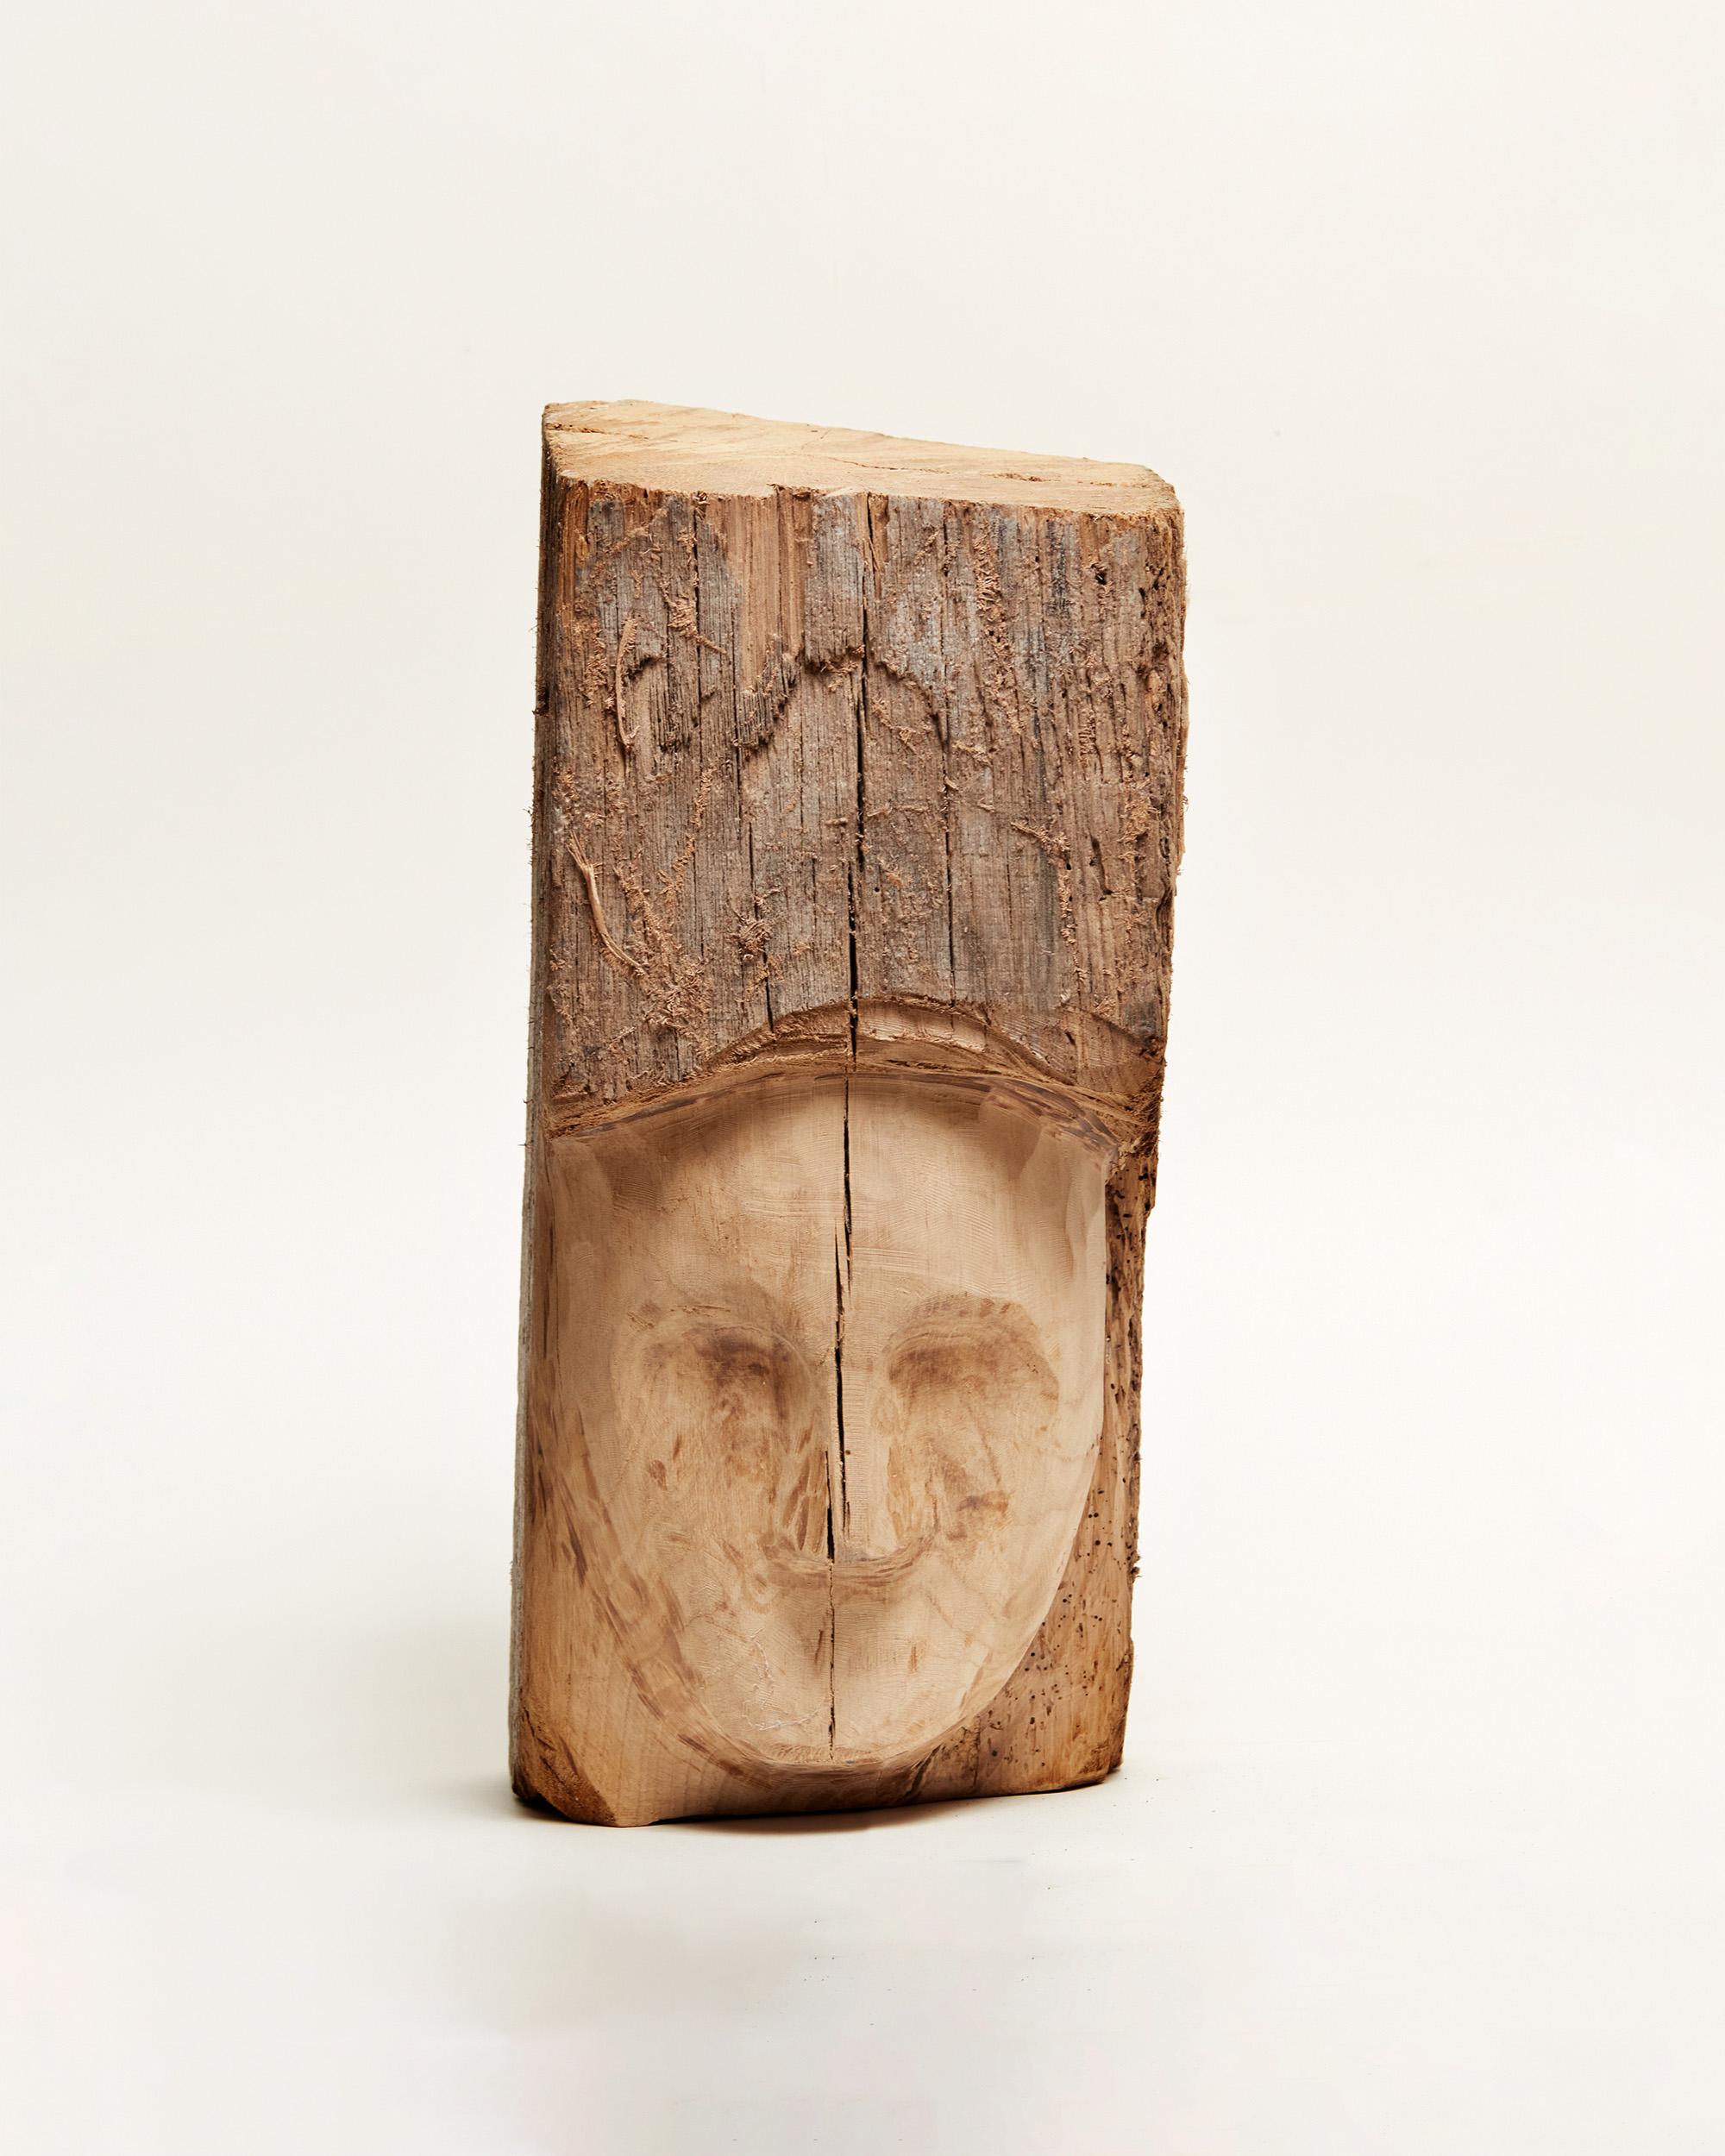 Valentin Abad Figurative Sculpture - Portrait 2 - Wood portrait sculpture